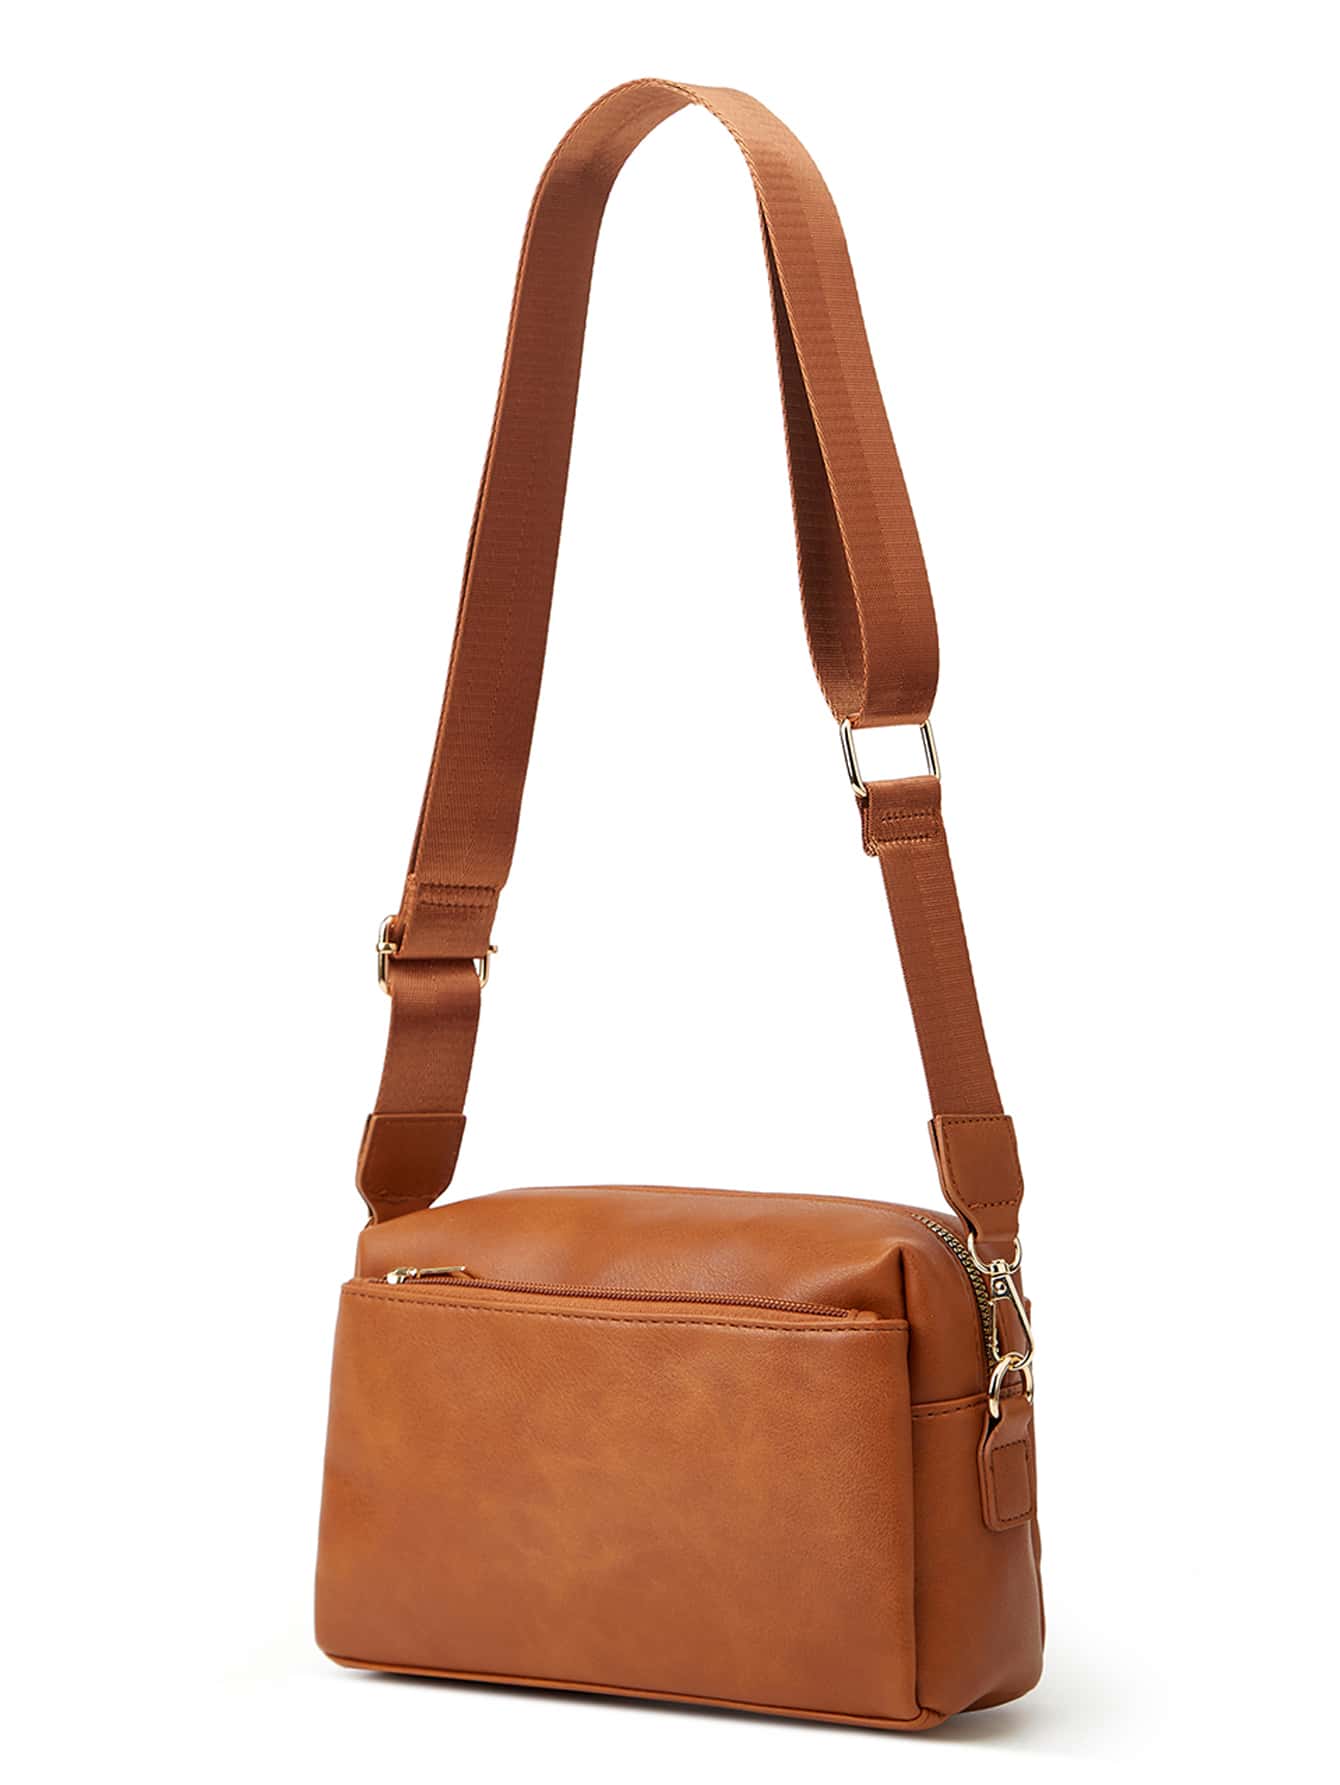 женская сумка кошелек в 003 грин 98514 Женский кожаный кошелек, сумка через плечо, сумка через плечо, коричневый